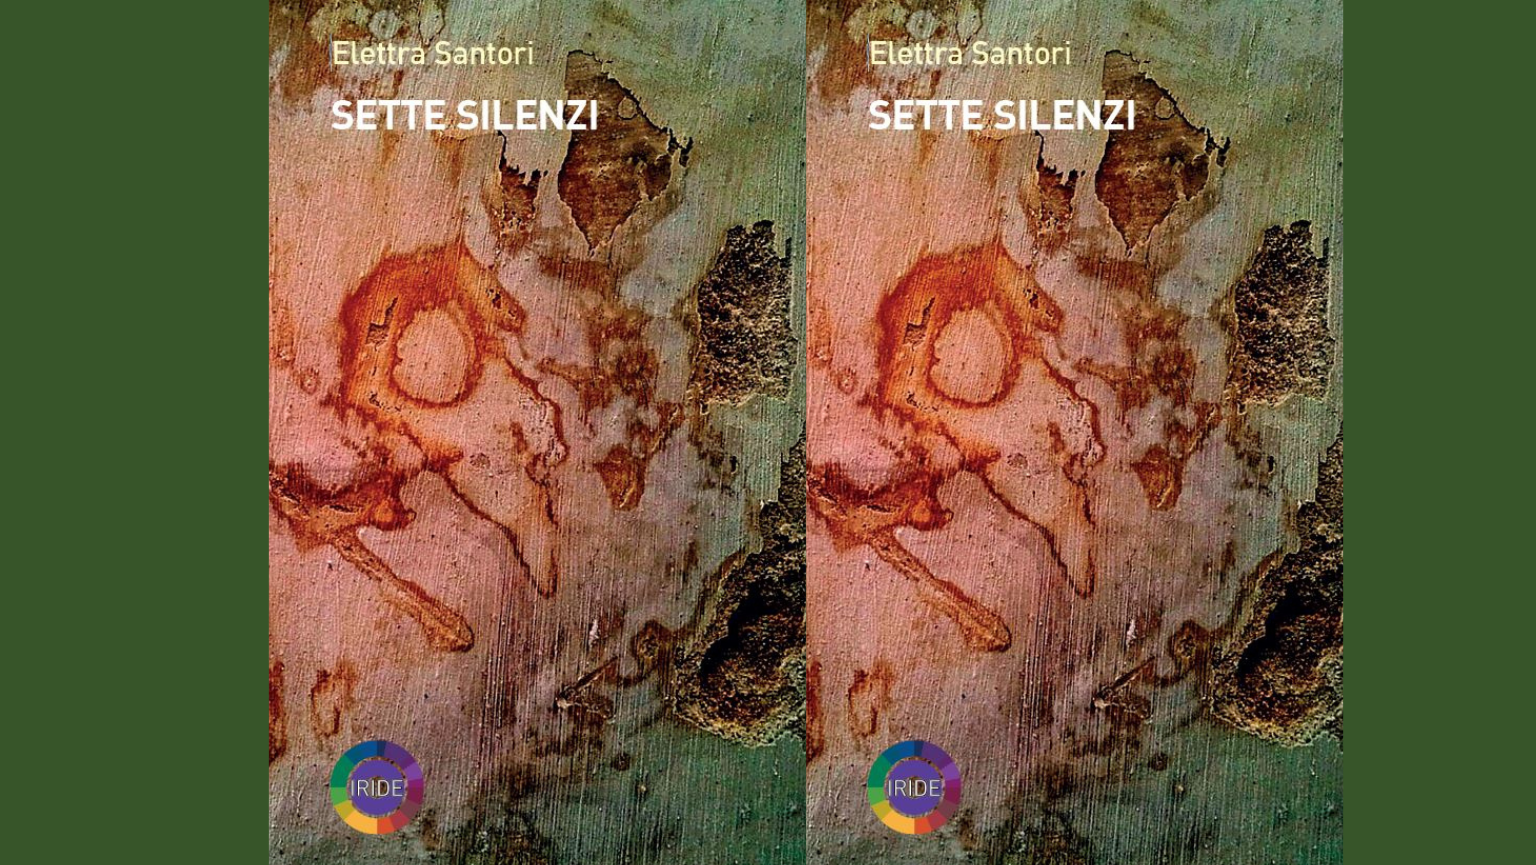 Copertina del libro Sette silenzi di Elettra Santori, Rubbettino Editore